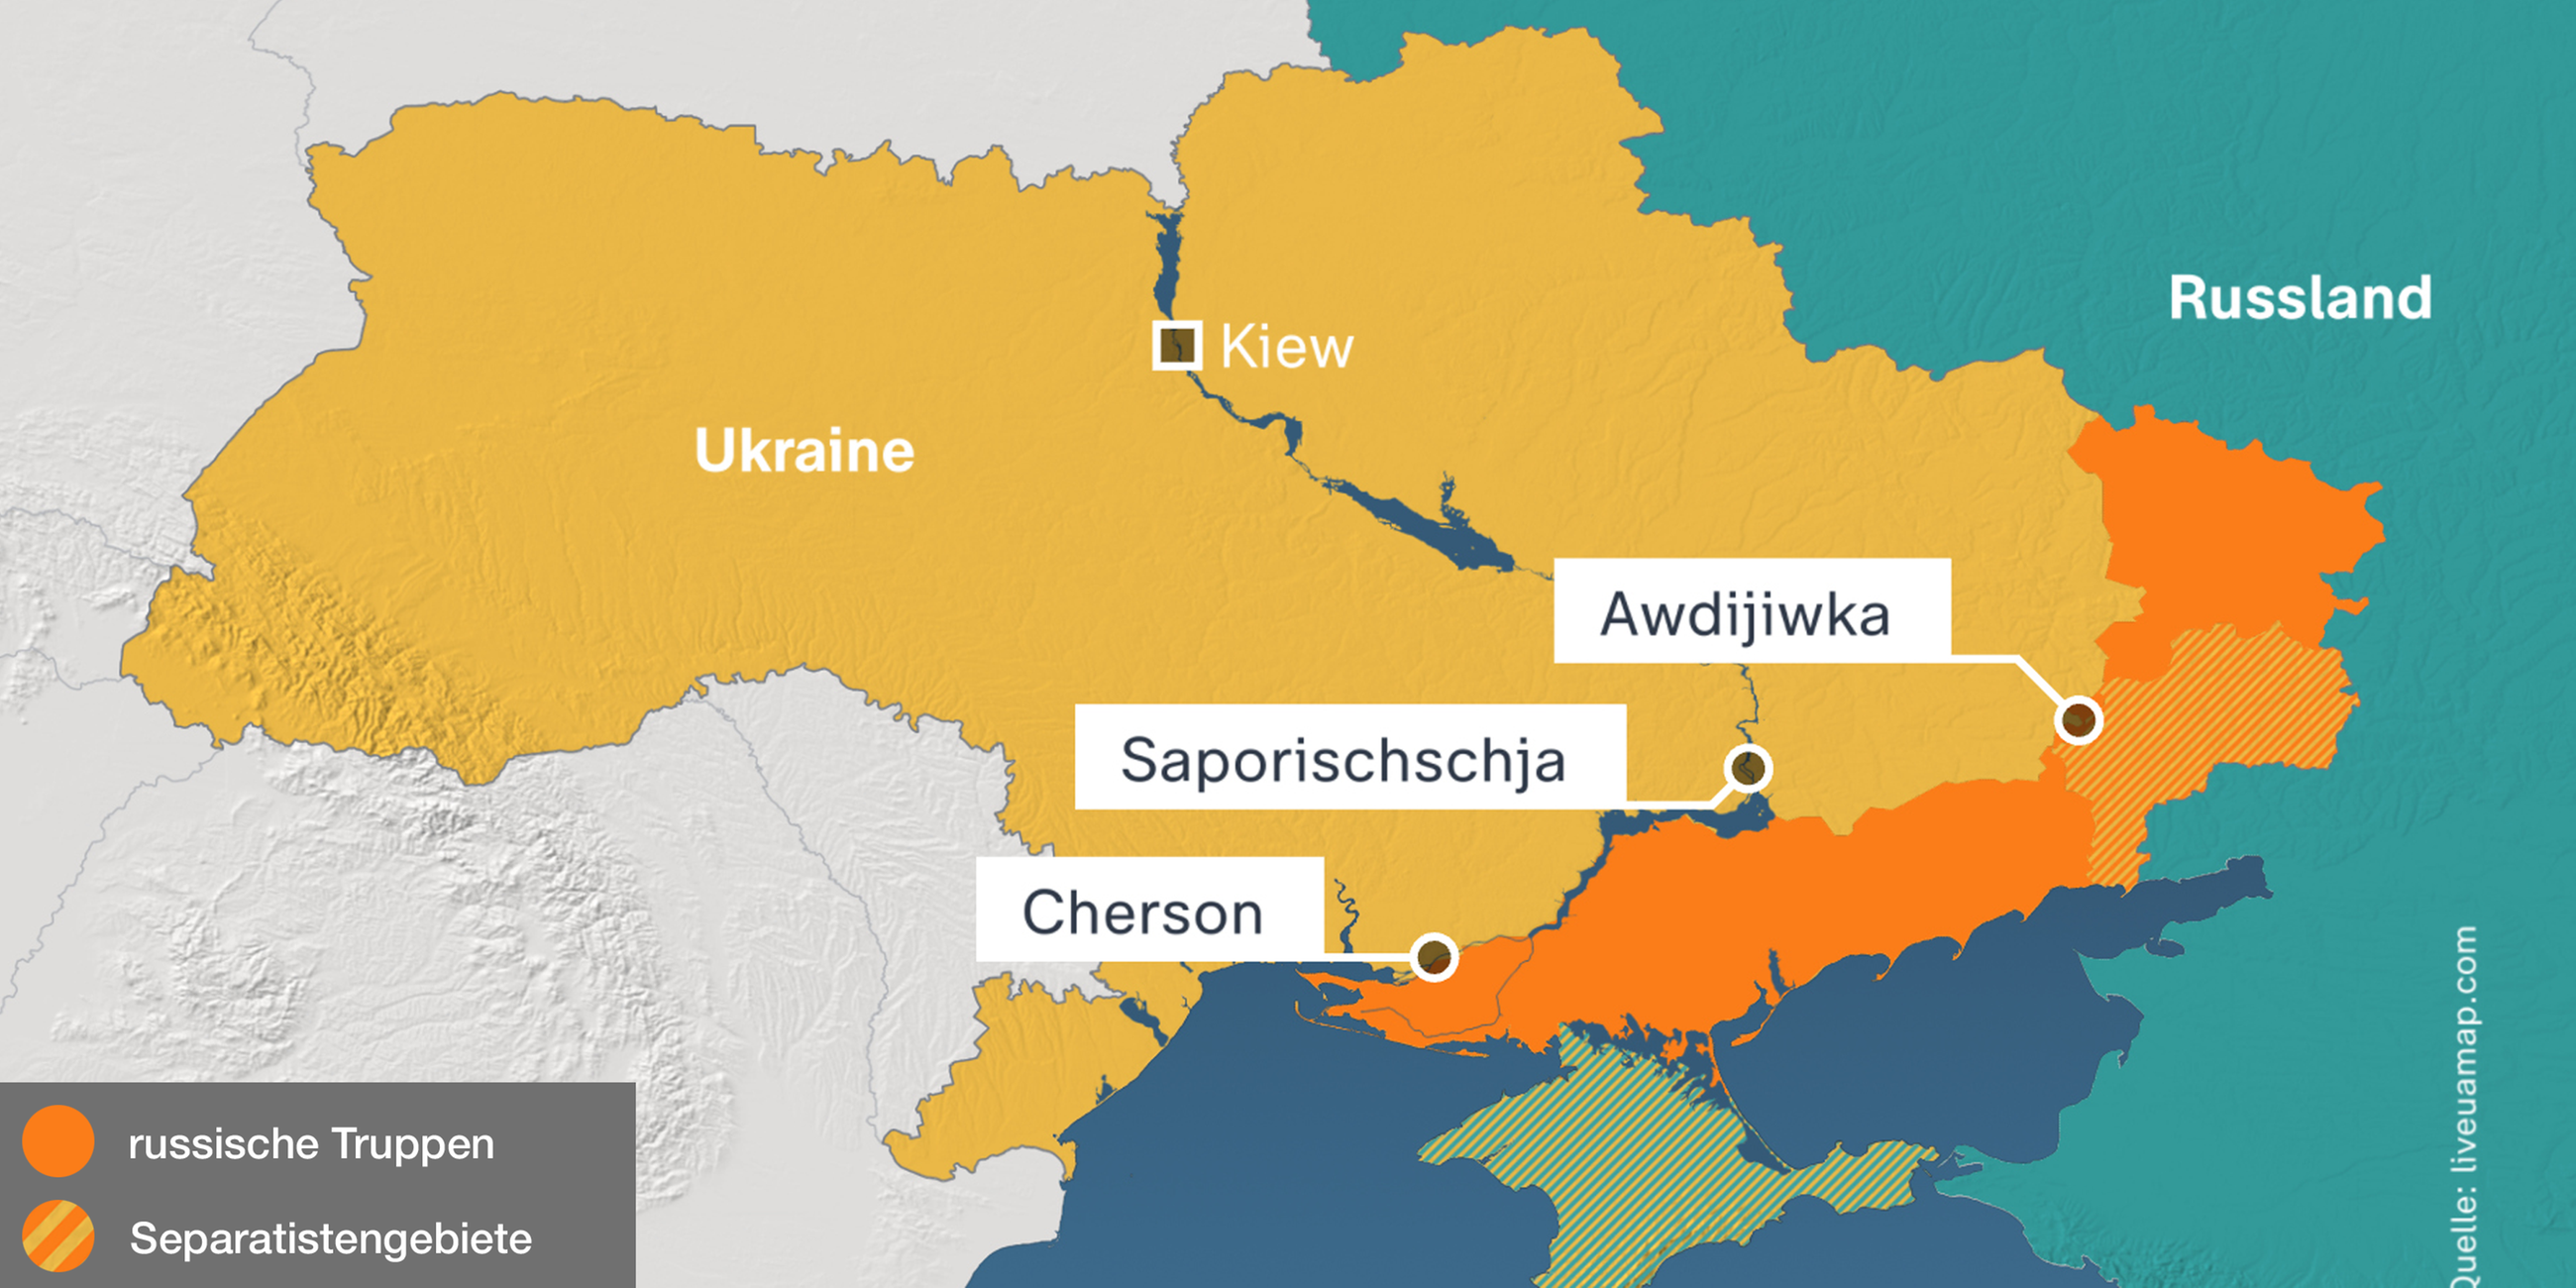 Die Karte zeigt den aktuellen Stand der russischen Besatzung der Ukraine am 16.12.2023. Auf der Karte eingezeichnet sind die Städte Cherson, Saporischschja und Awdijiwka, die sich in der Grenzregion der Besatzung befinden.